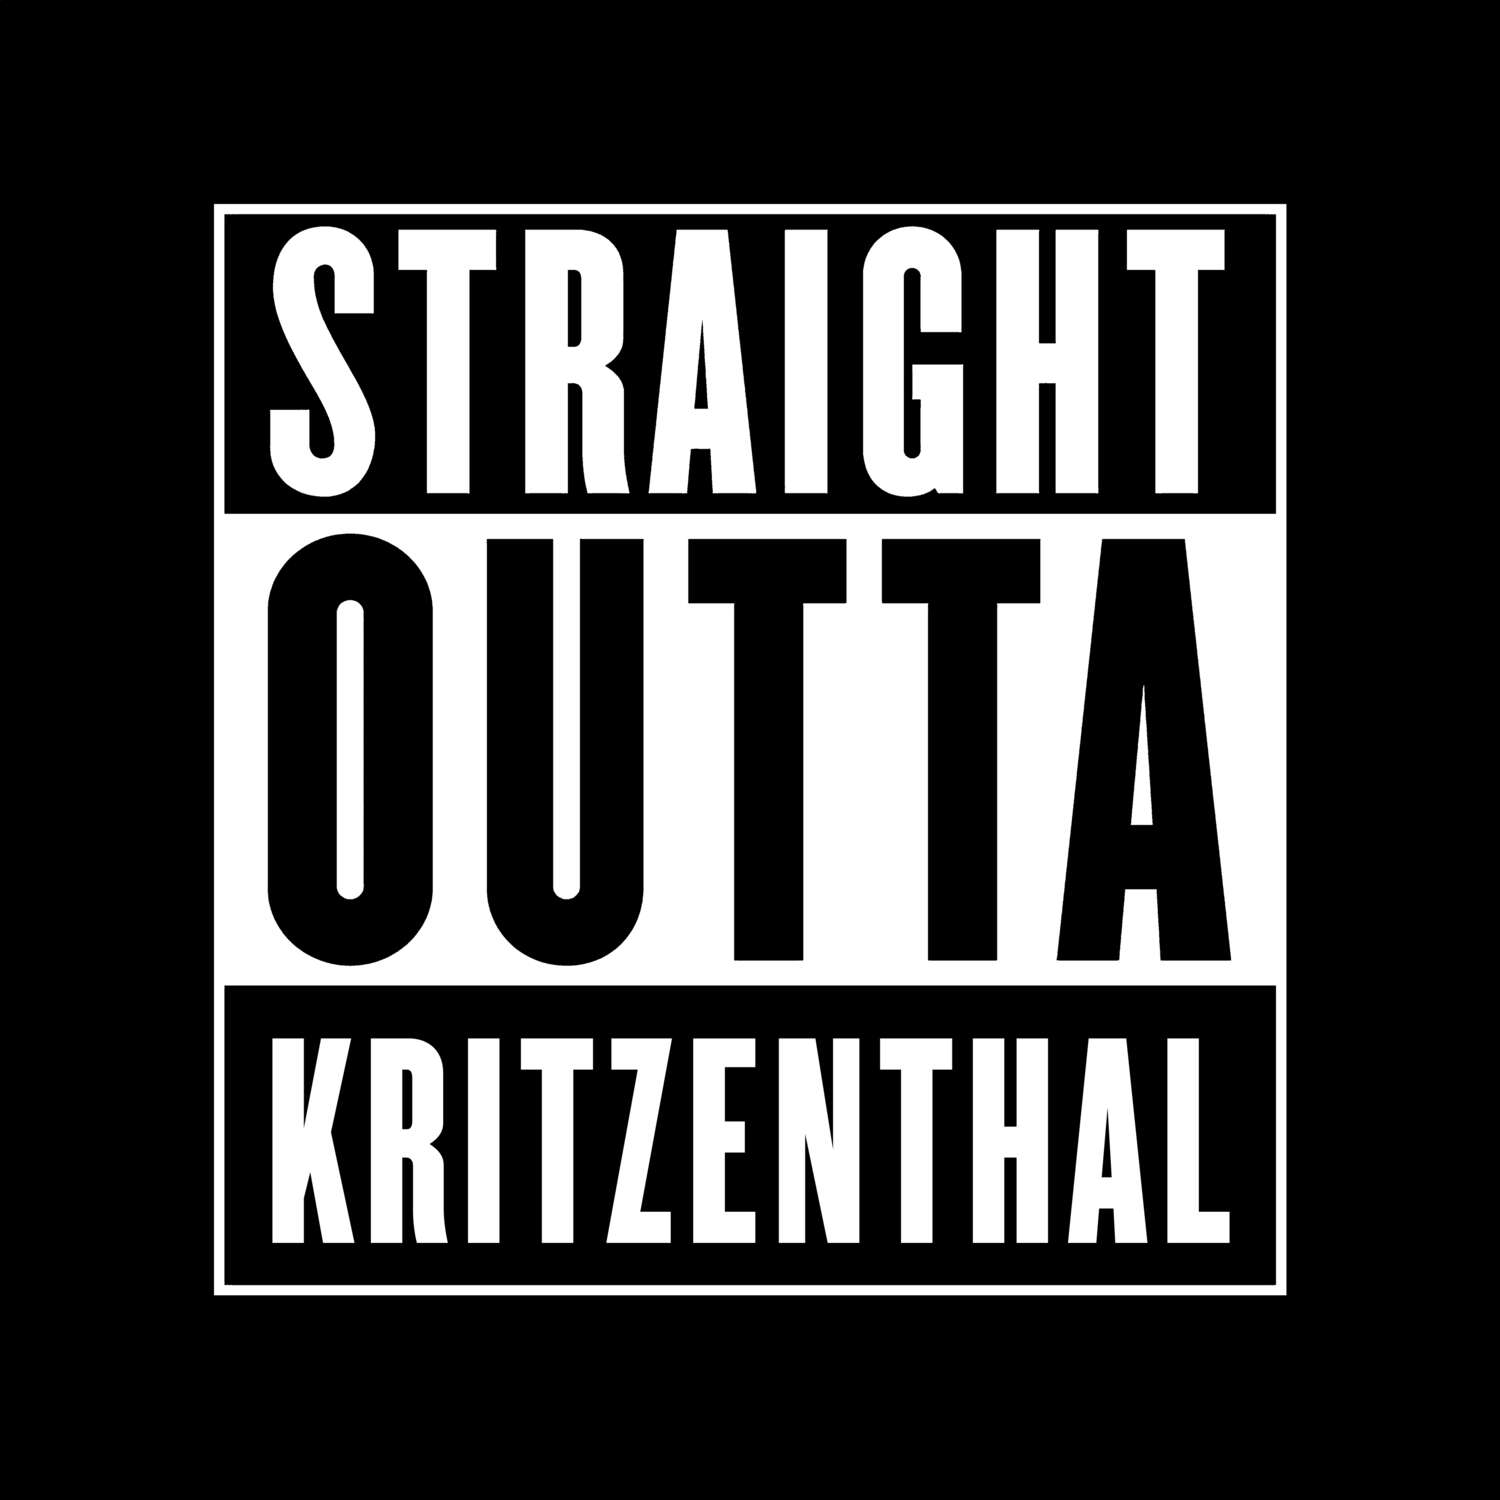 Kritzenthal T-Shirt »Straight Outta«